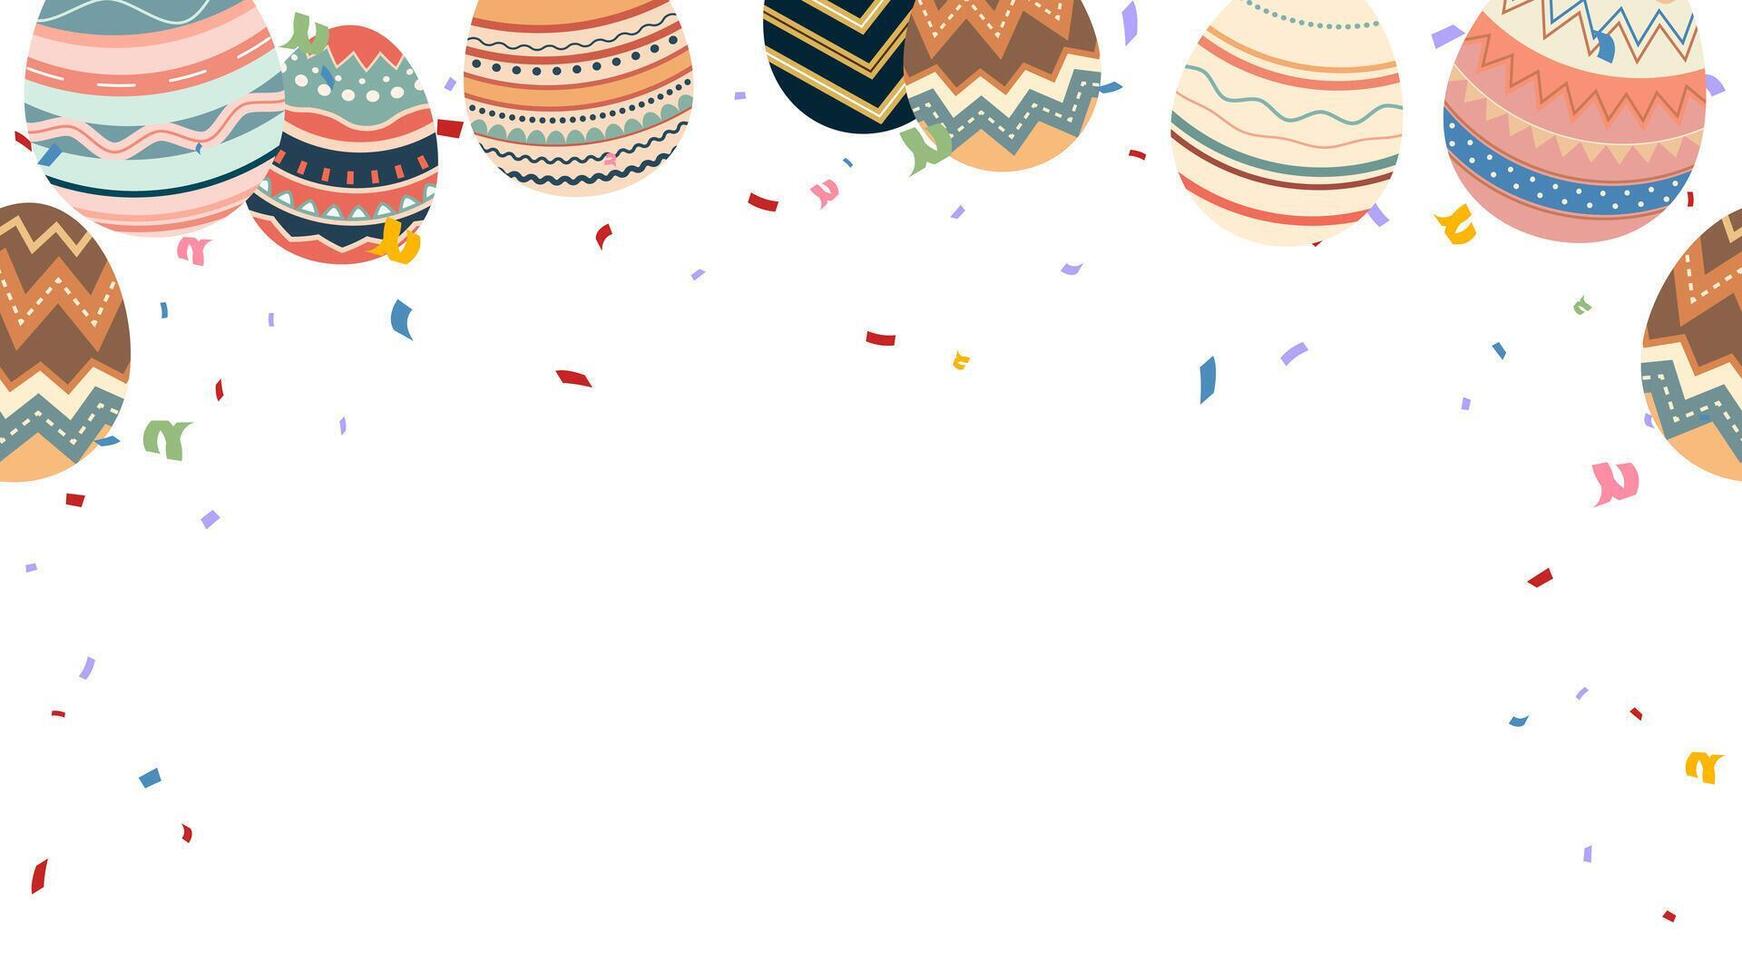 fest Lycklig påsk baner med färgrik målad ägg och konfetti vektor